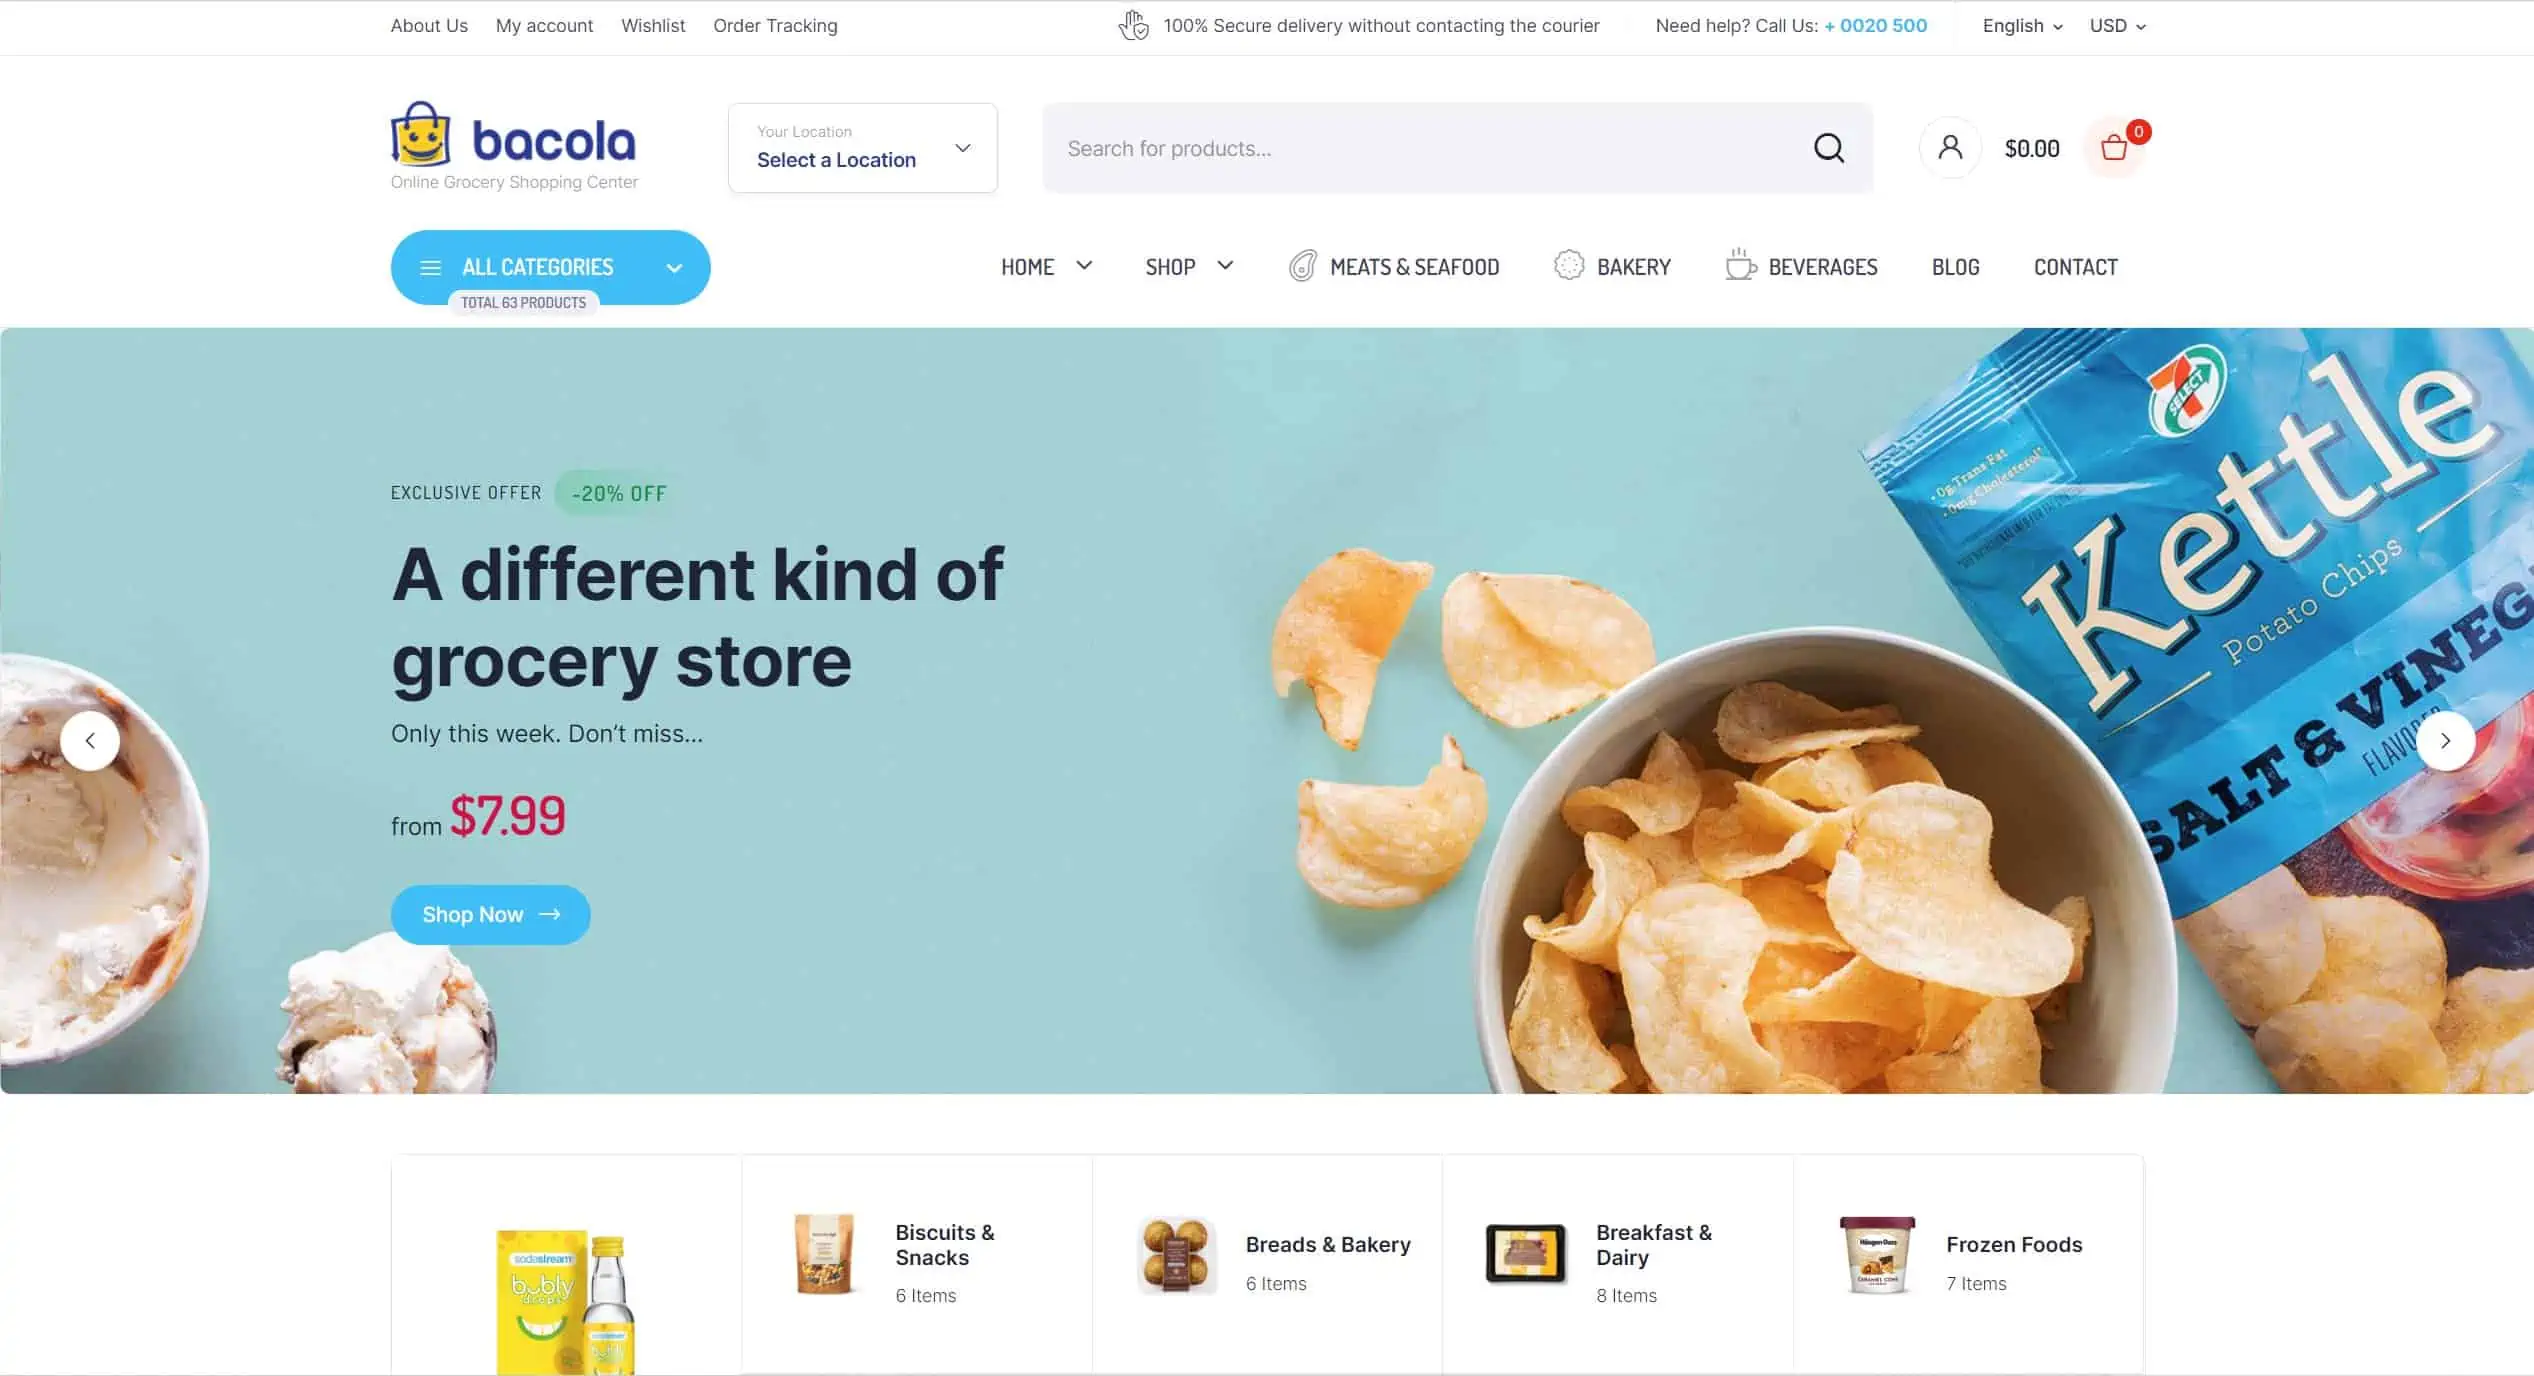 ecommerce website design for snack food